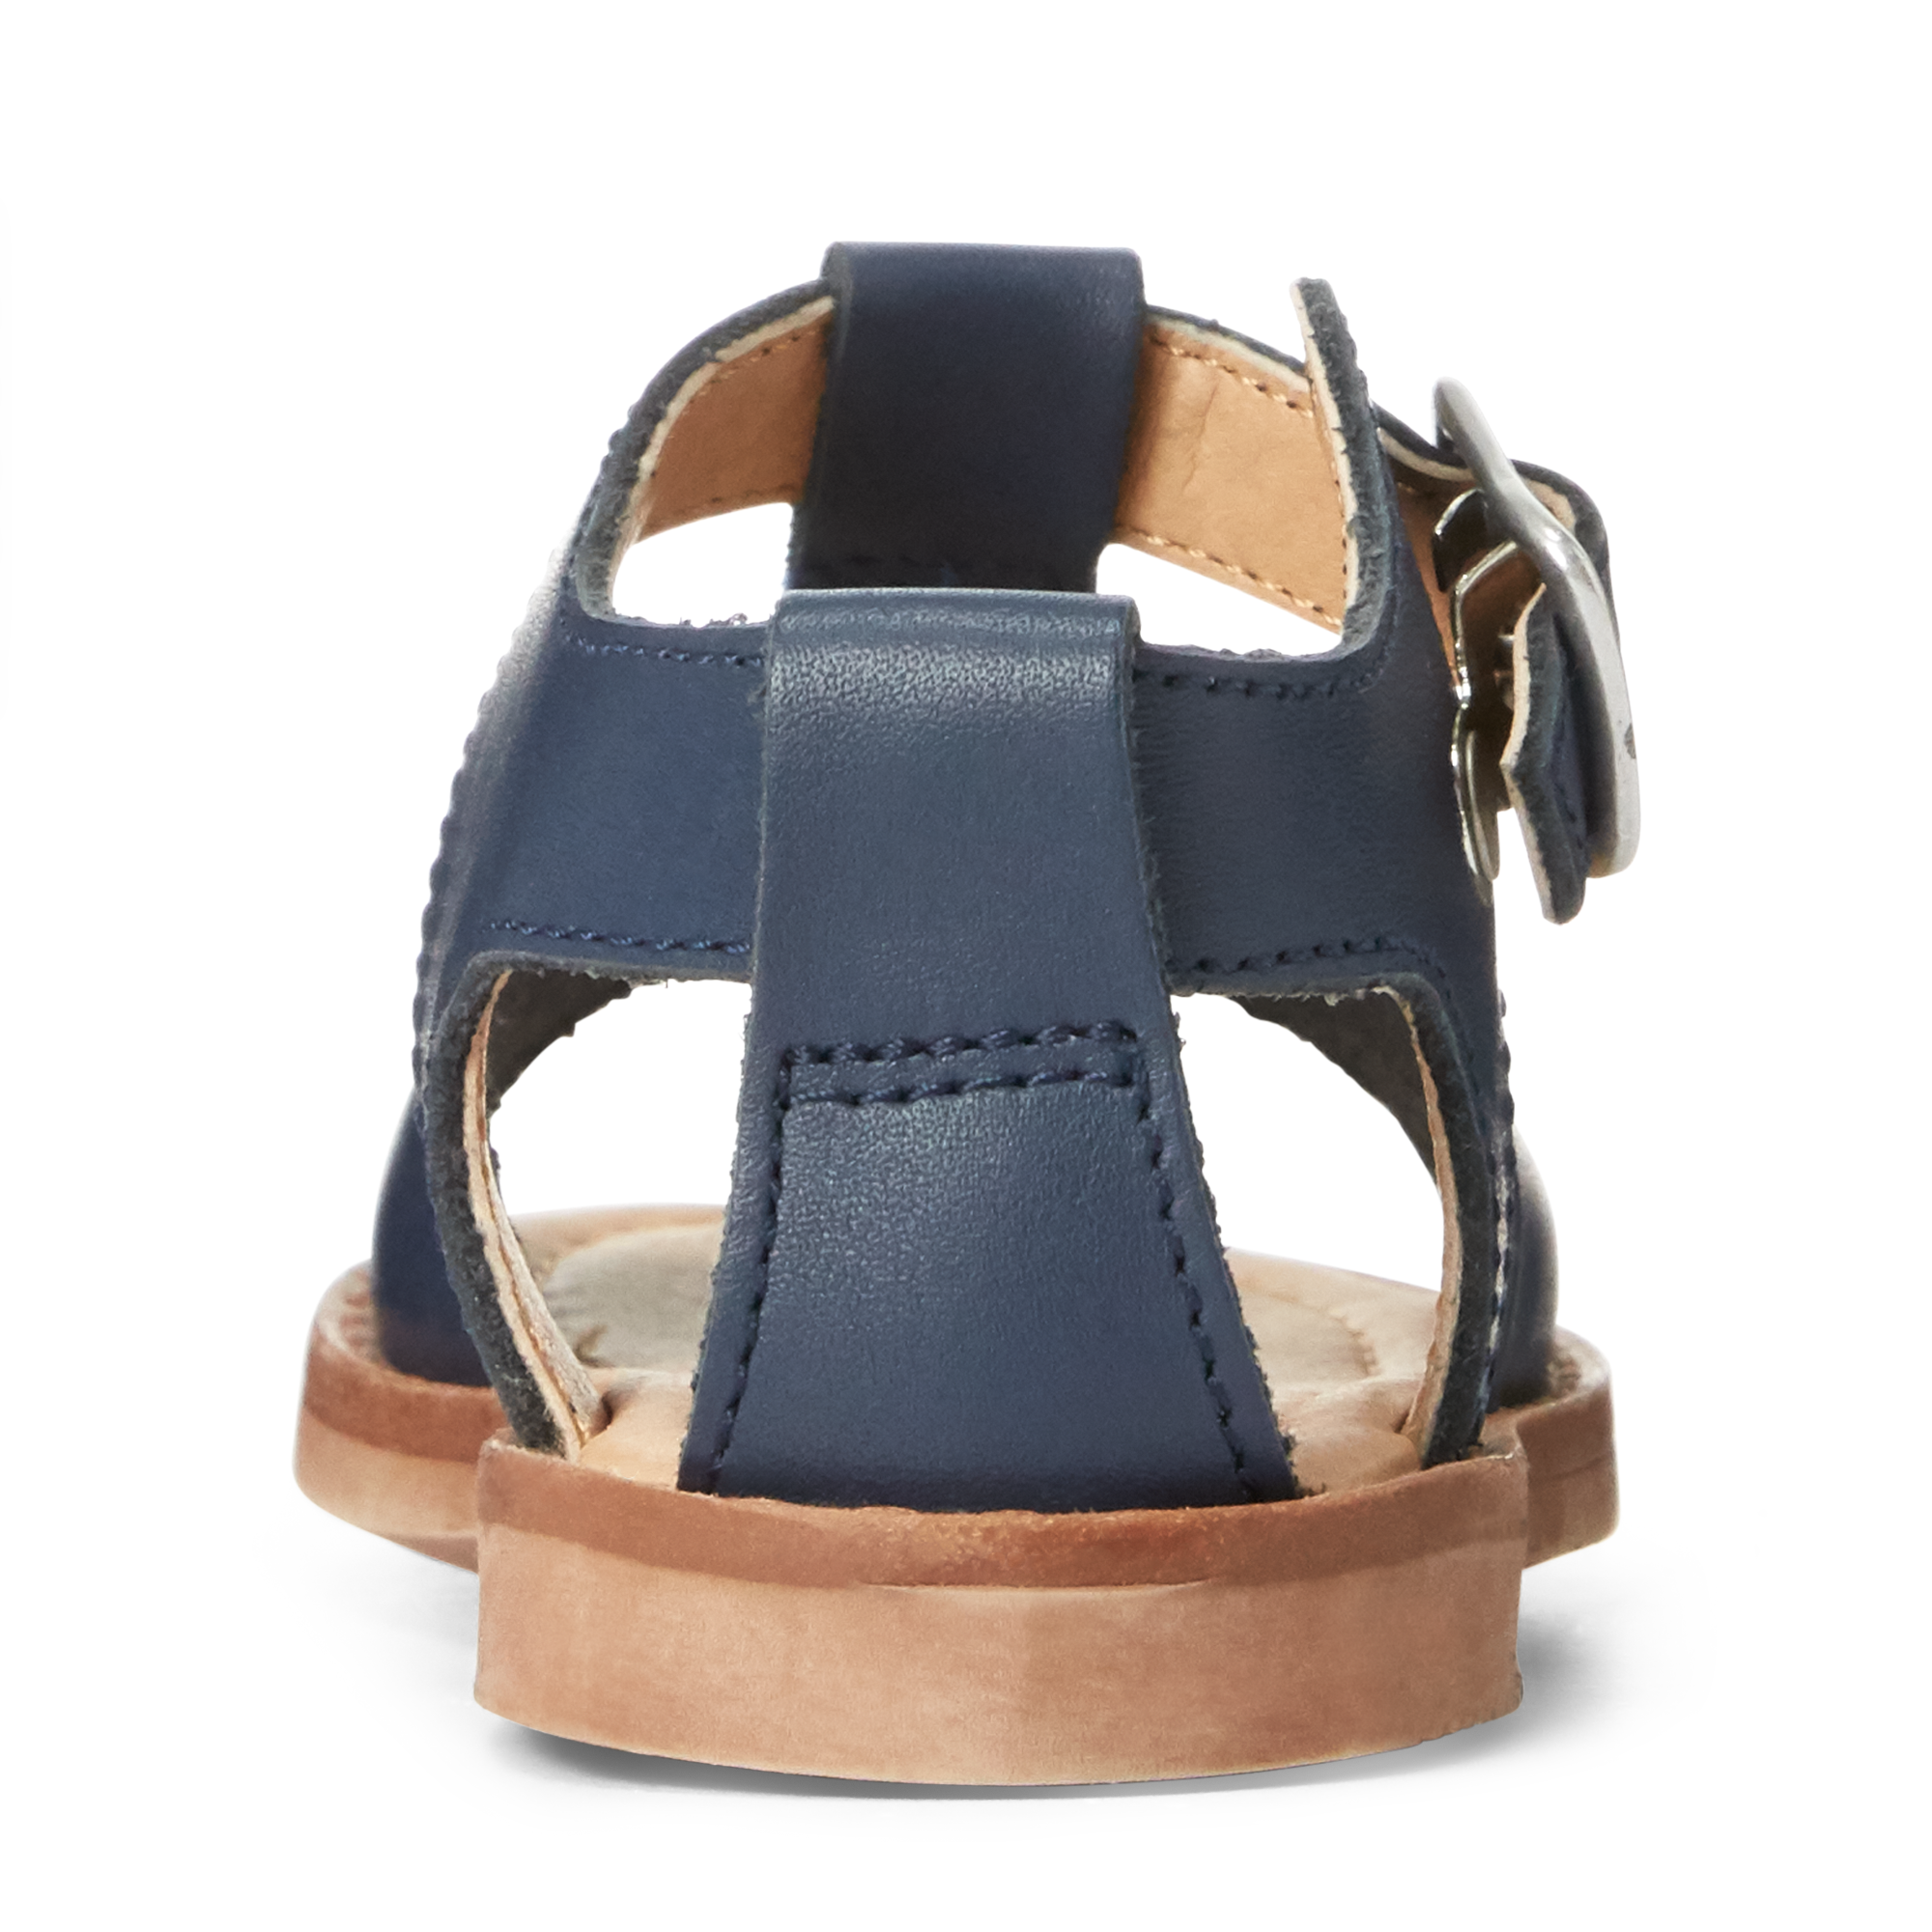 Ralph Lauren Kittredge Leather Sandal. 3